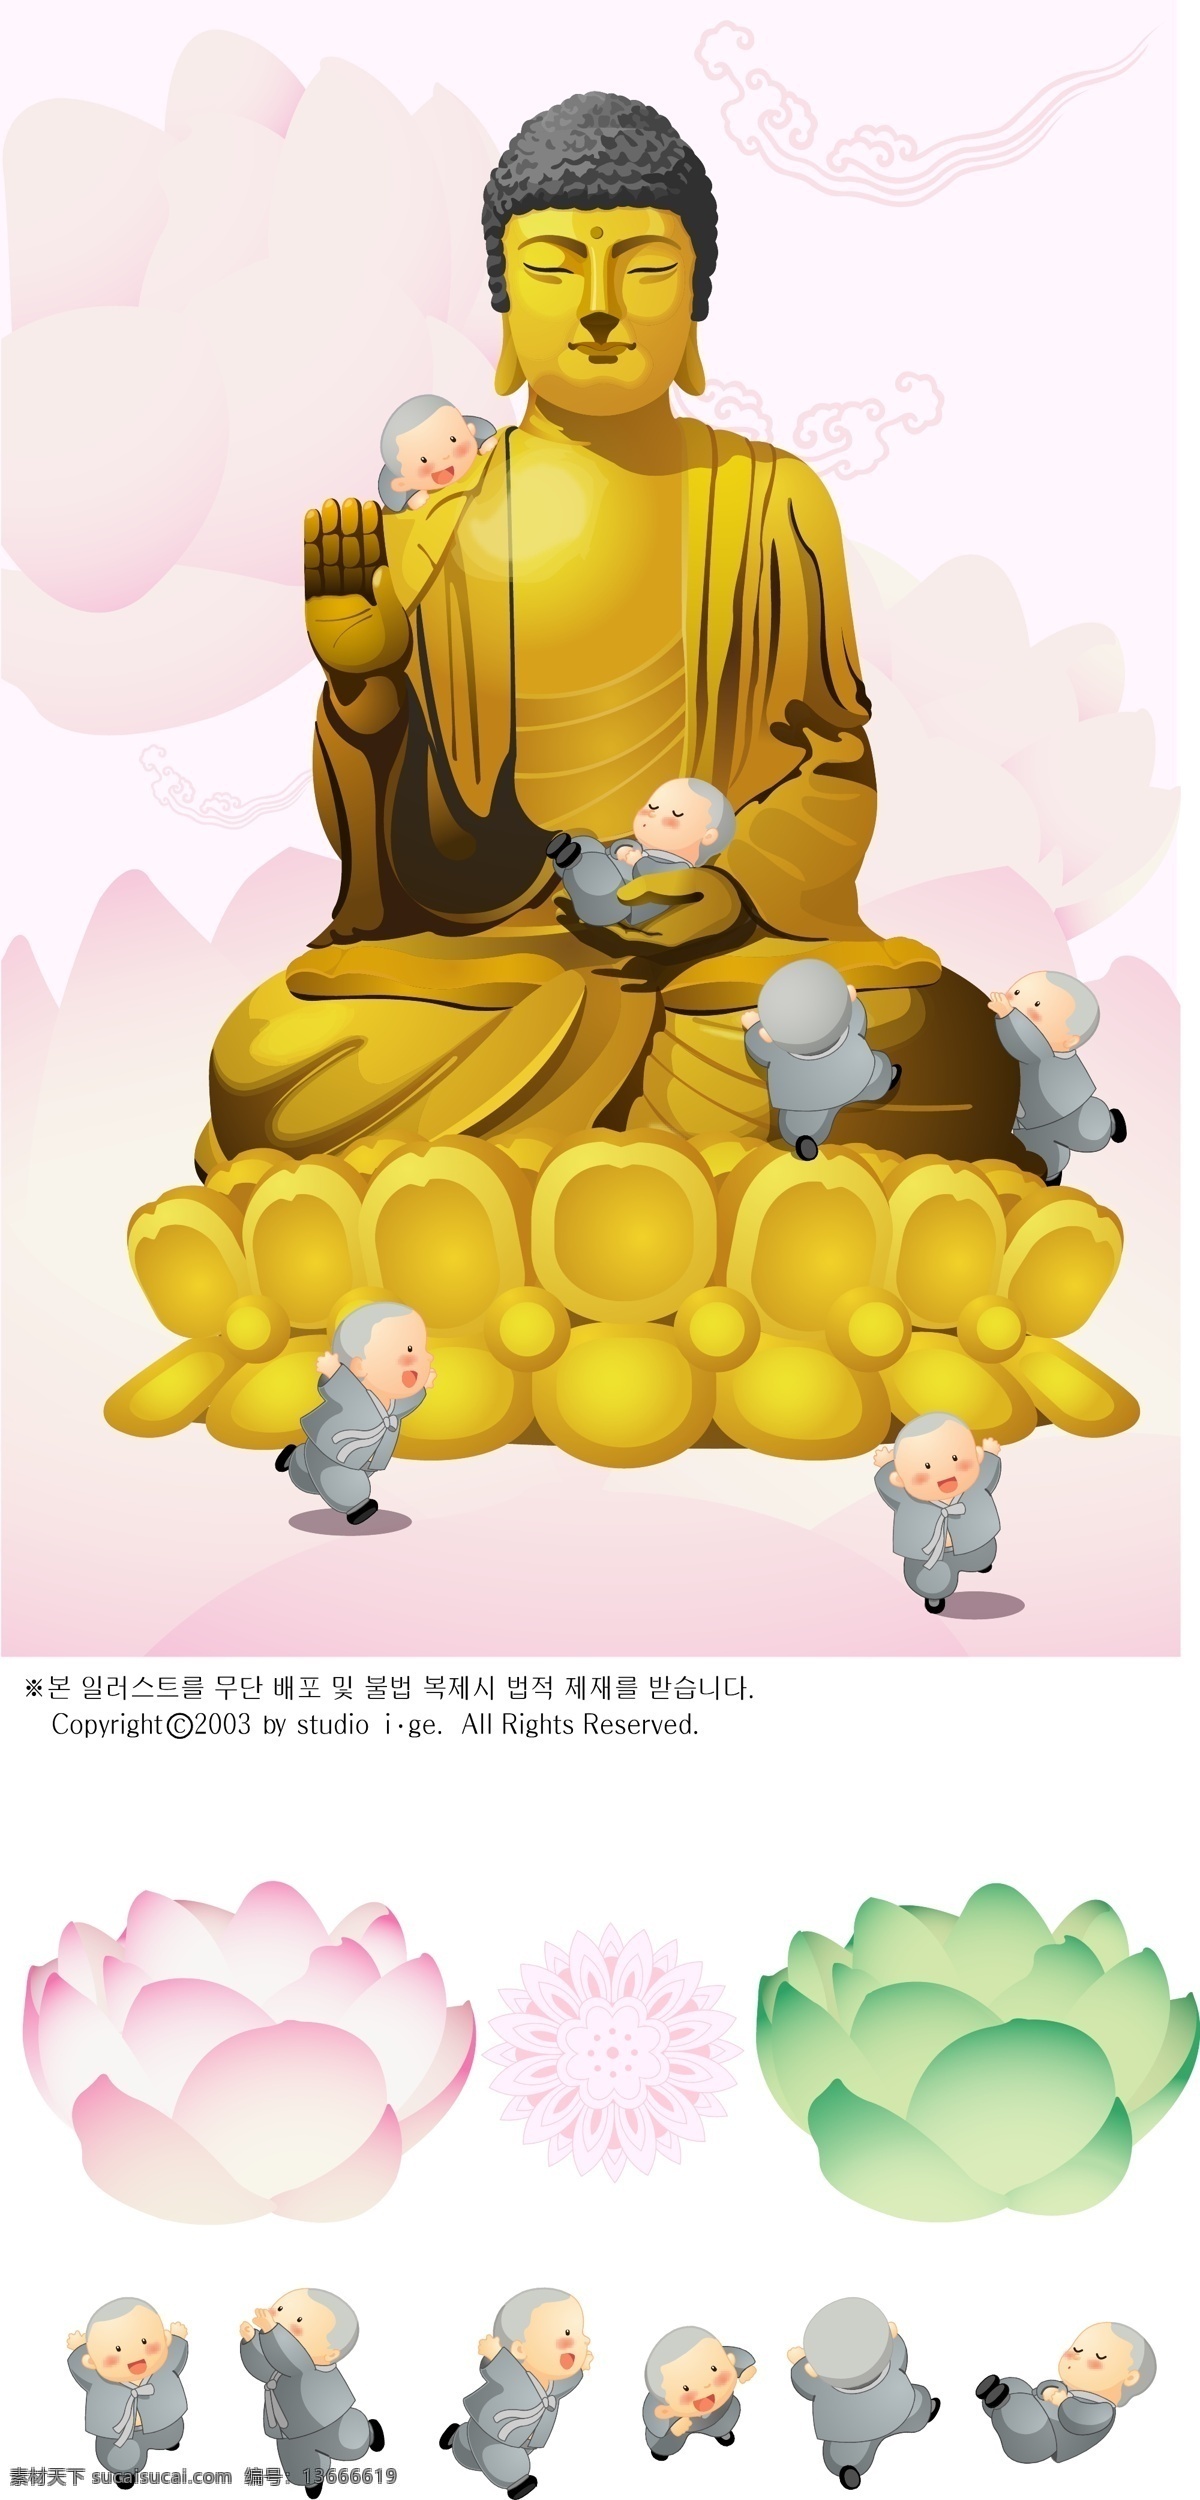 佛像 和尚 莲花 如来佛 童子 文化艺术 宗教信仰 坐莲 矢量